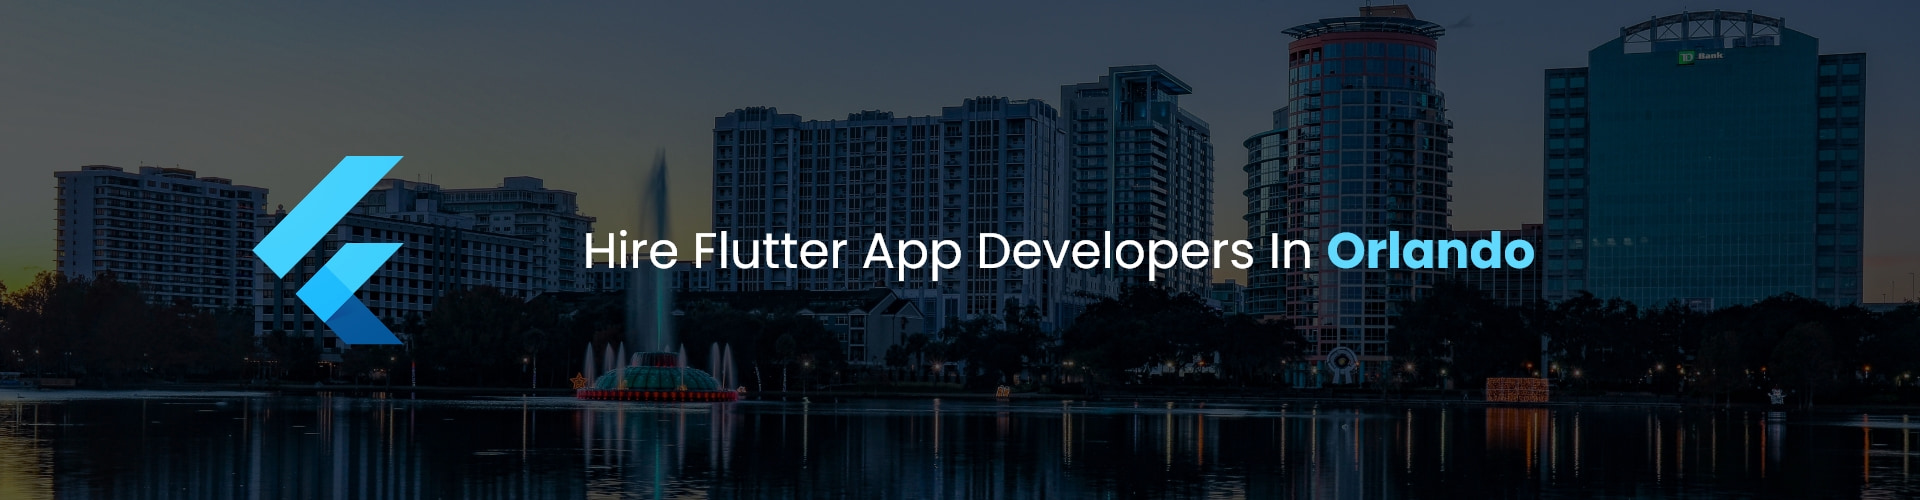 hire flutter app developers in orlando